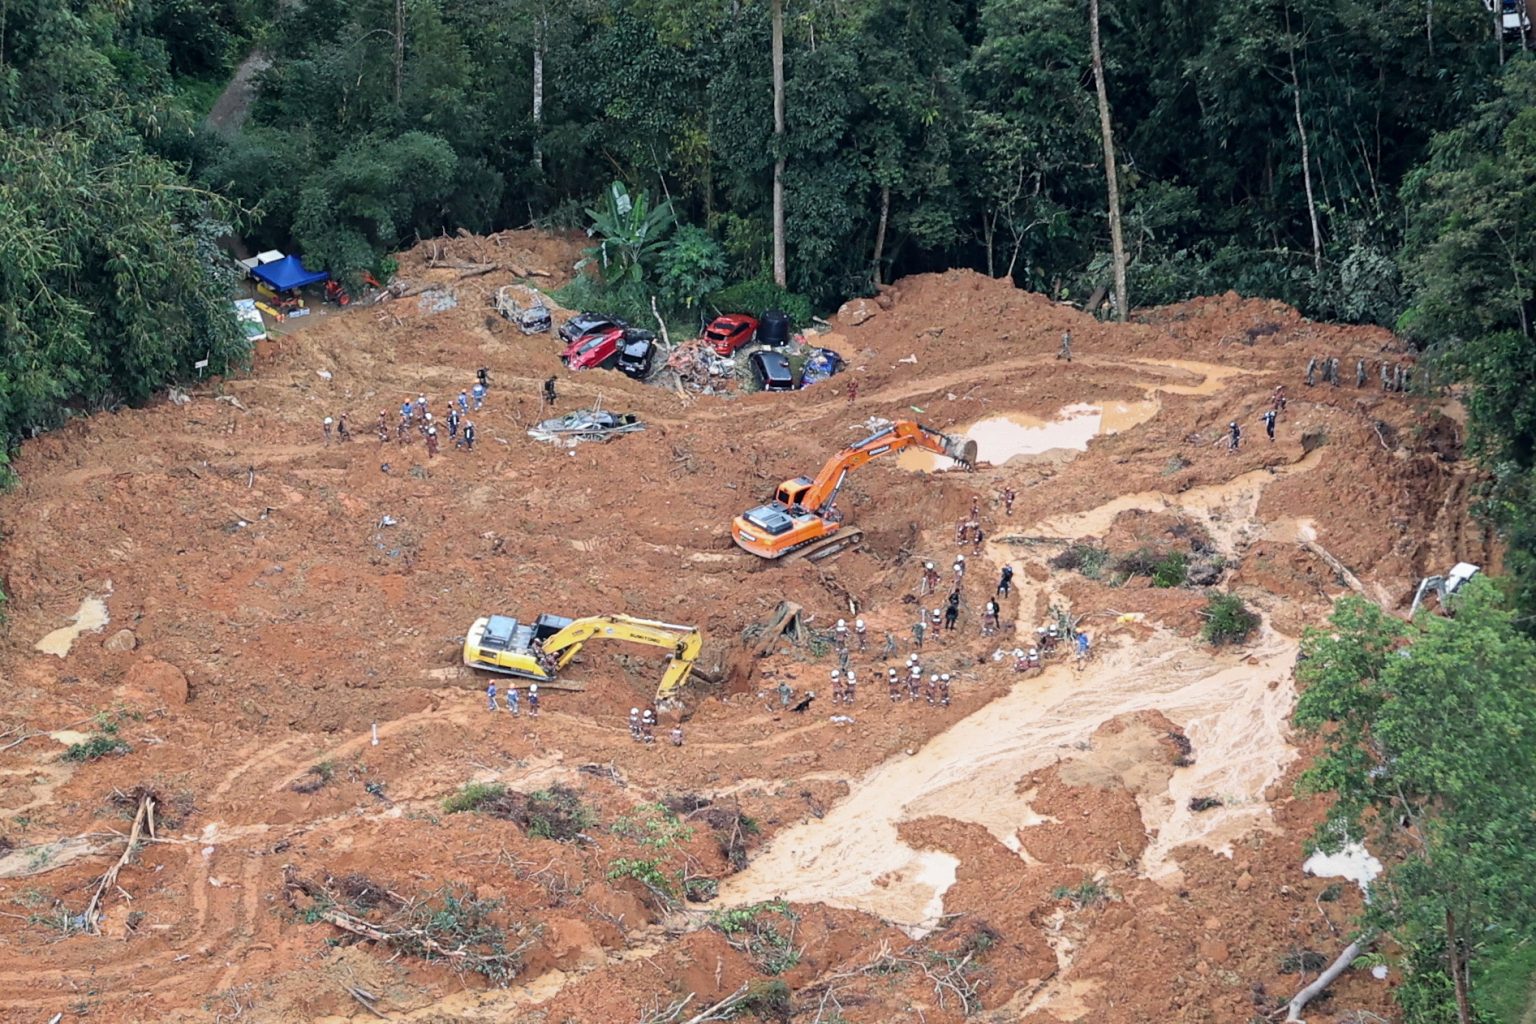 峇冬加里土崩|印尼籍挖土机司机：“每挖出一具遗体 眼泪都流下”